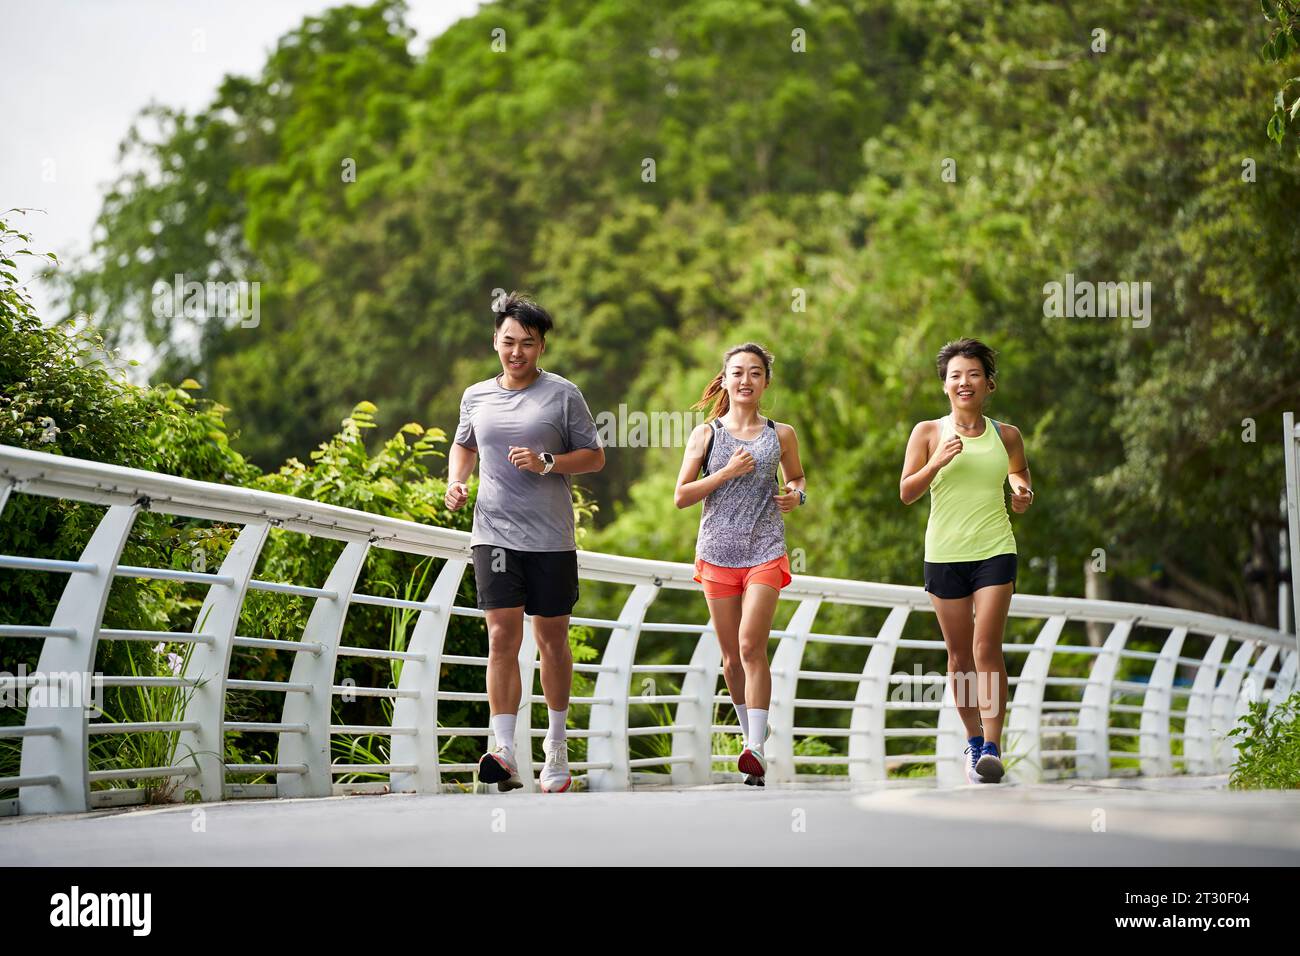 groupe de trois jeunes adultes asiatiques homme et femme courir jogging à l'extérieur dans le parc Banque D'Images